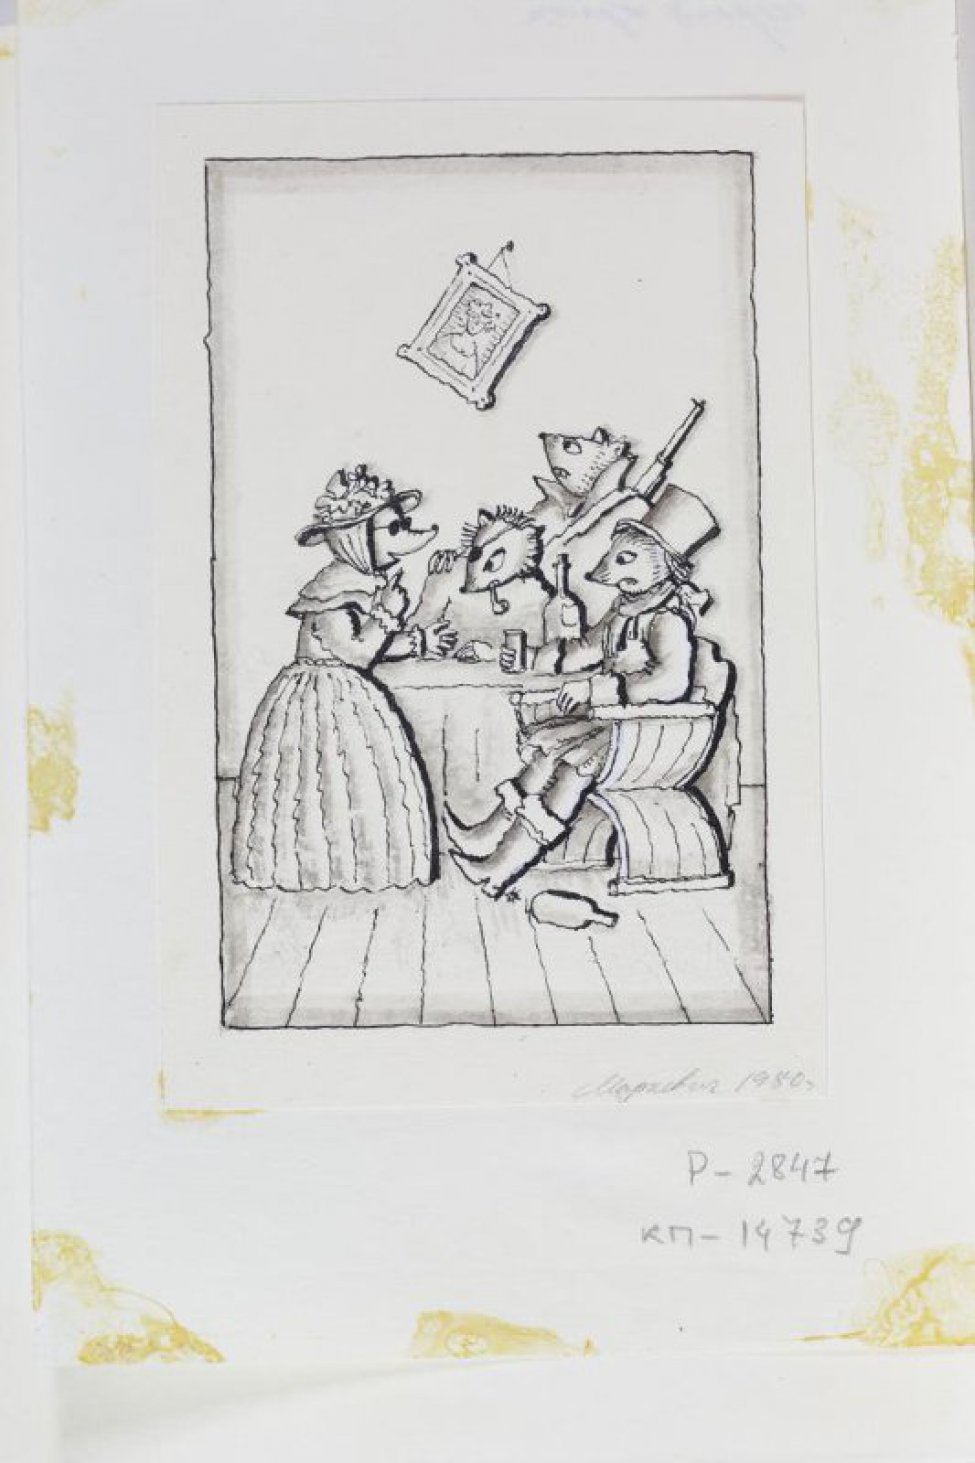 В правой части композиции стилизованное изображение трех мышей, сидящих за накрытым столом. Слева - стилизованное изображение крота в женском платье.